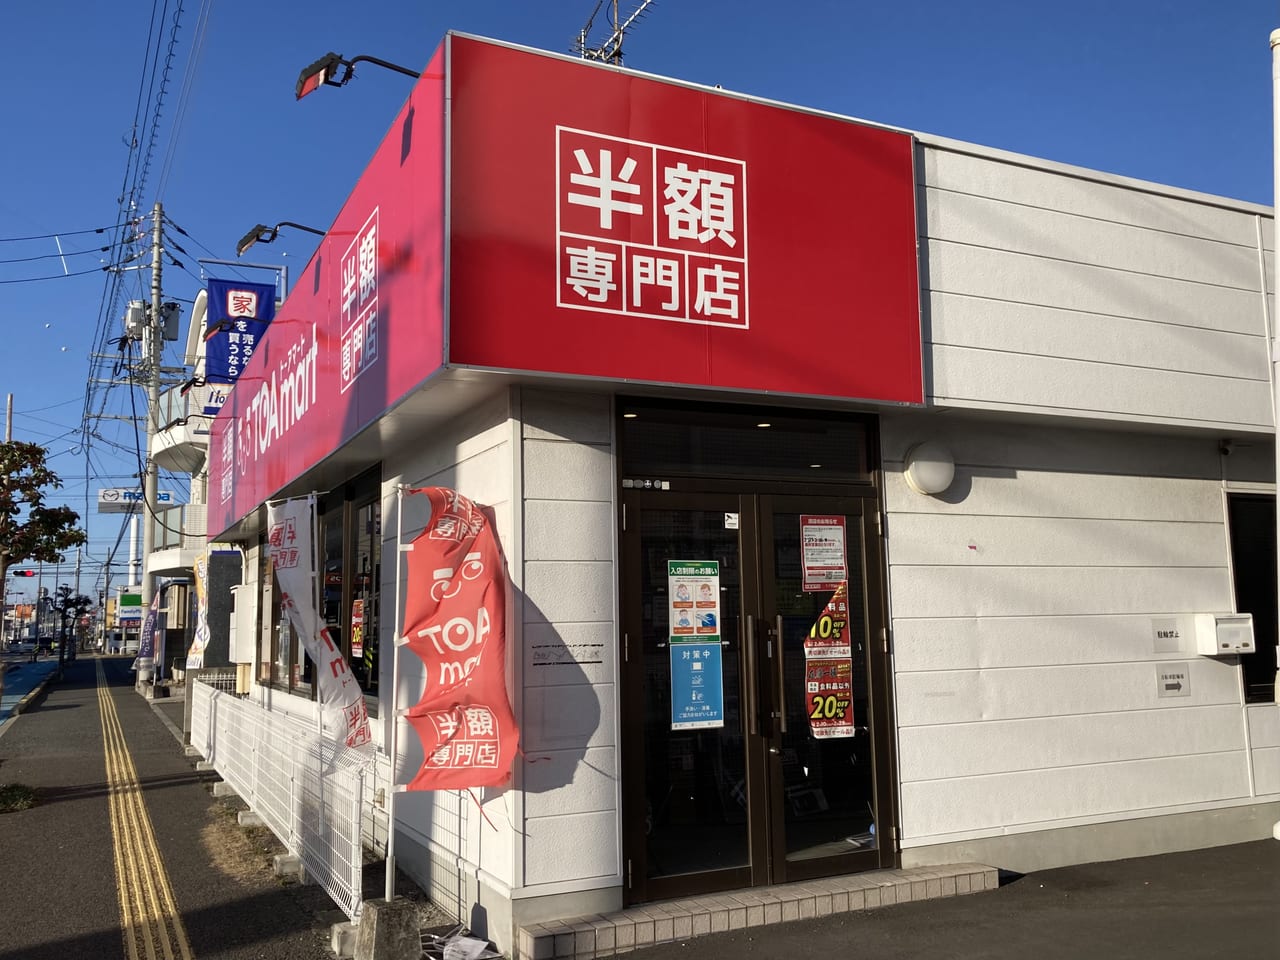 トーアマート松山店